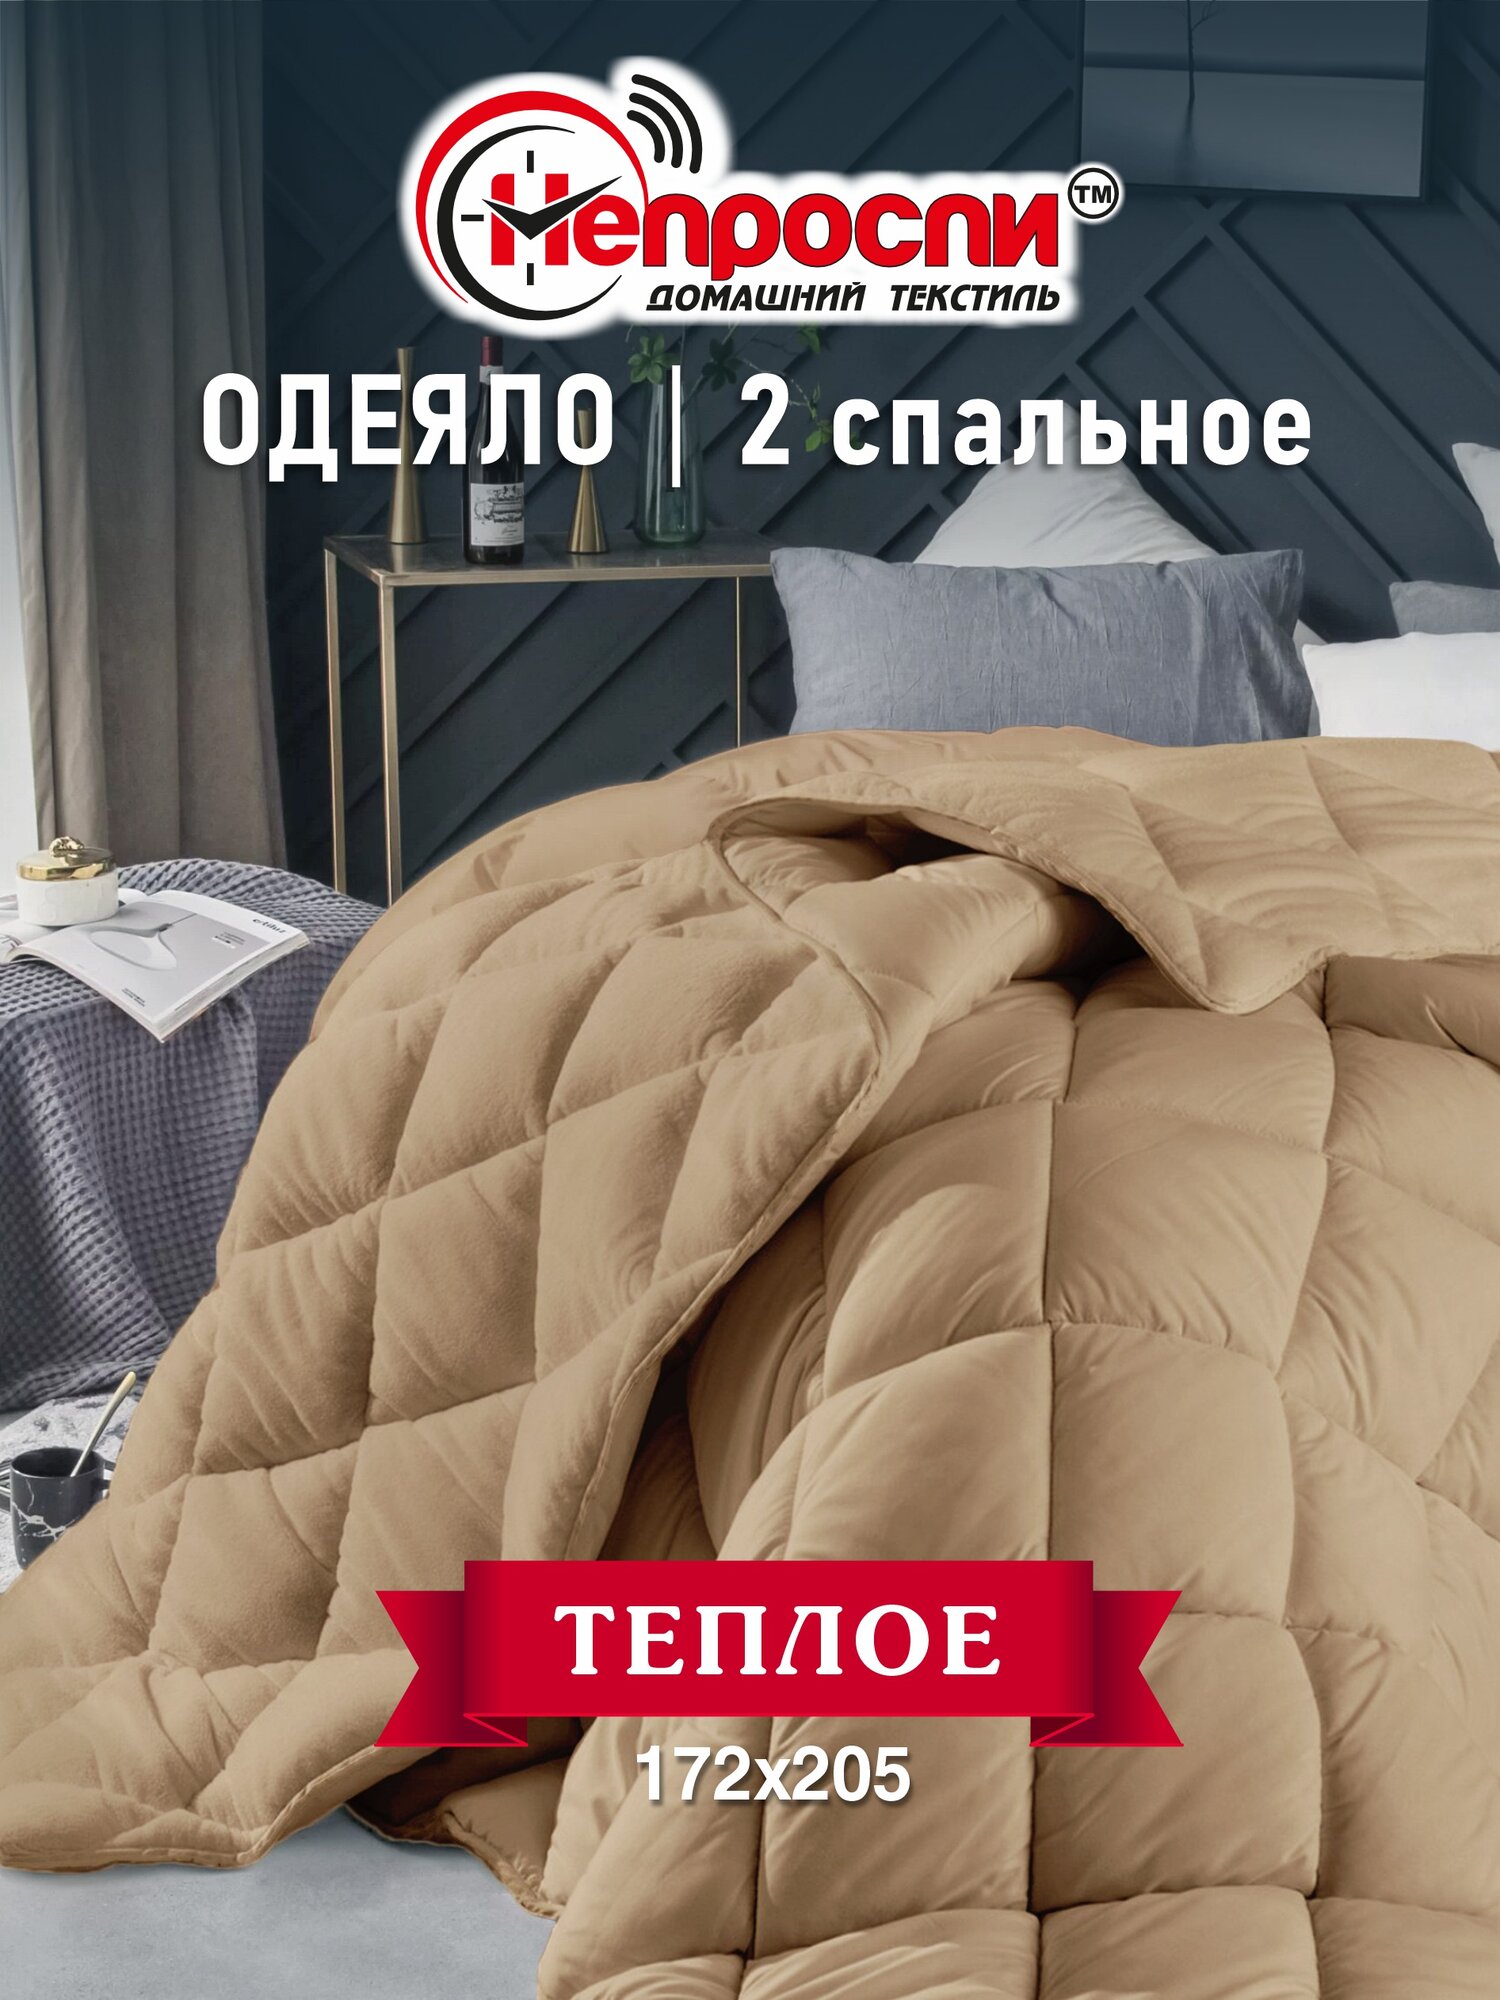 Одеяло Непроспи "Верблюд" 2-х спальное, 172х205 см / Демисезонное, теплое, стеганое одеяло из верблюжьей шерсти